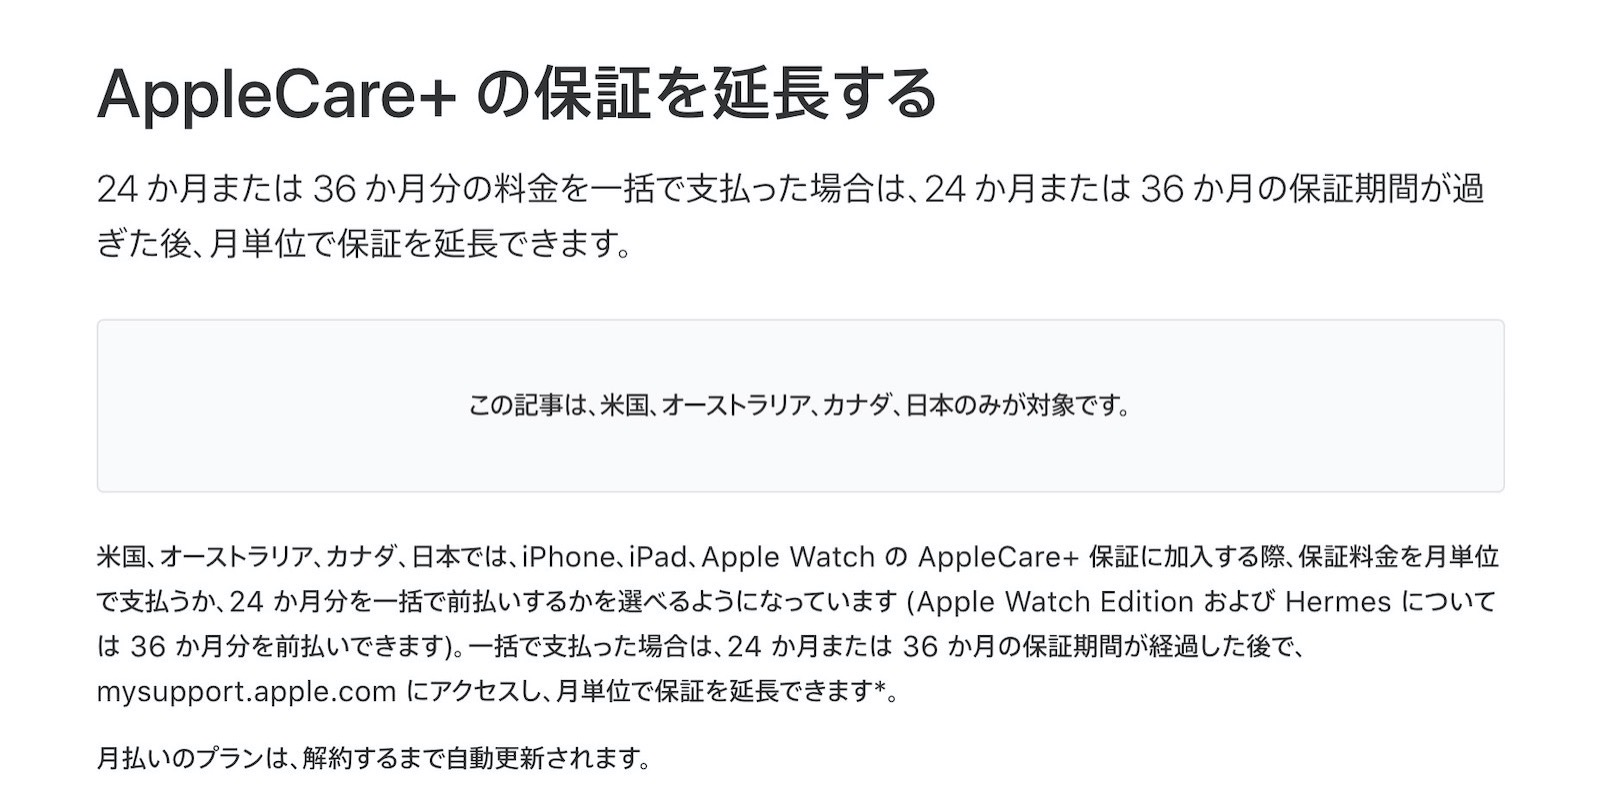 Apple Care=extend